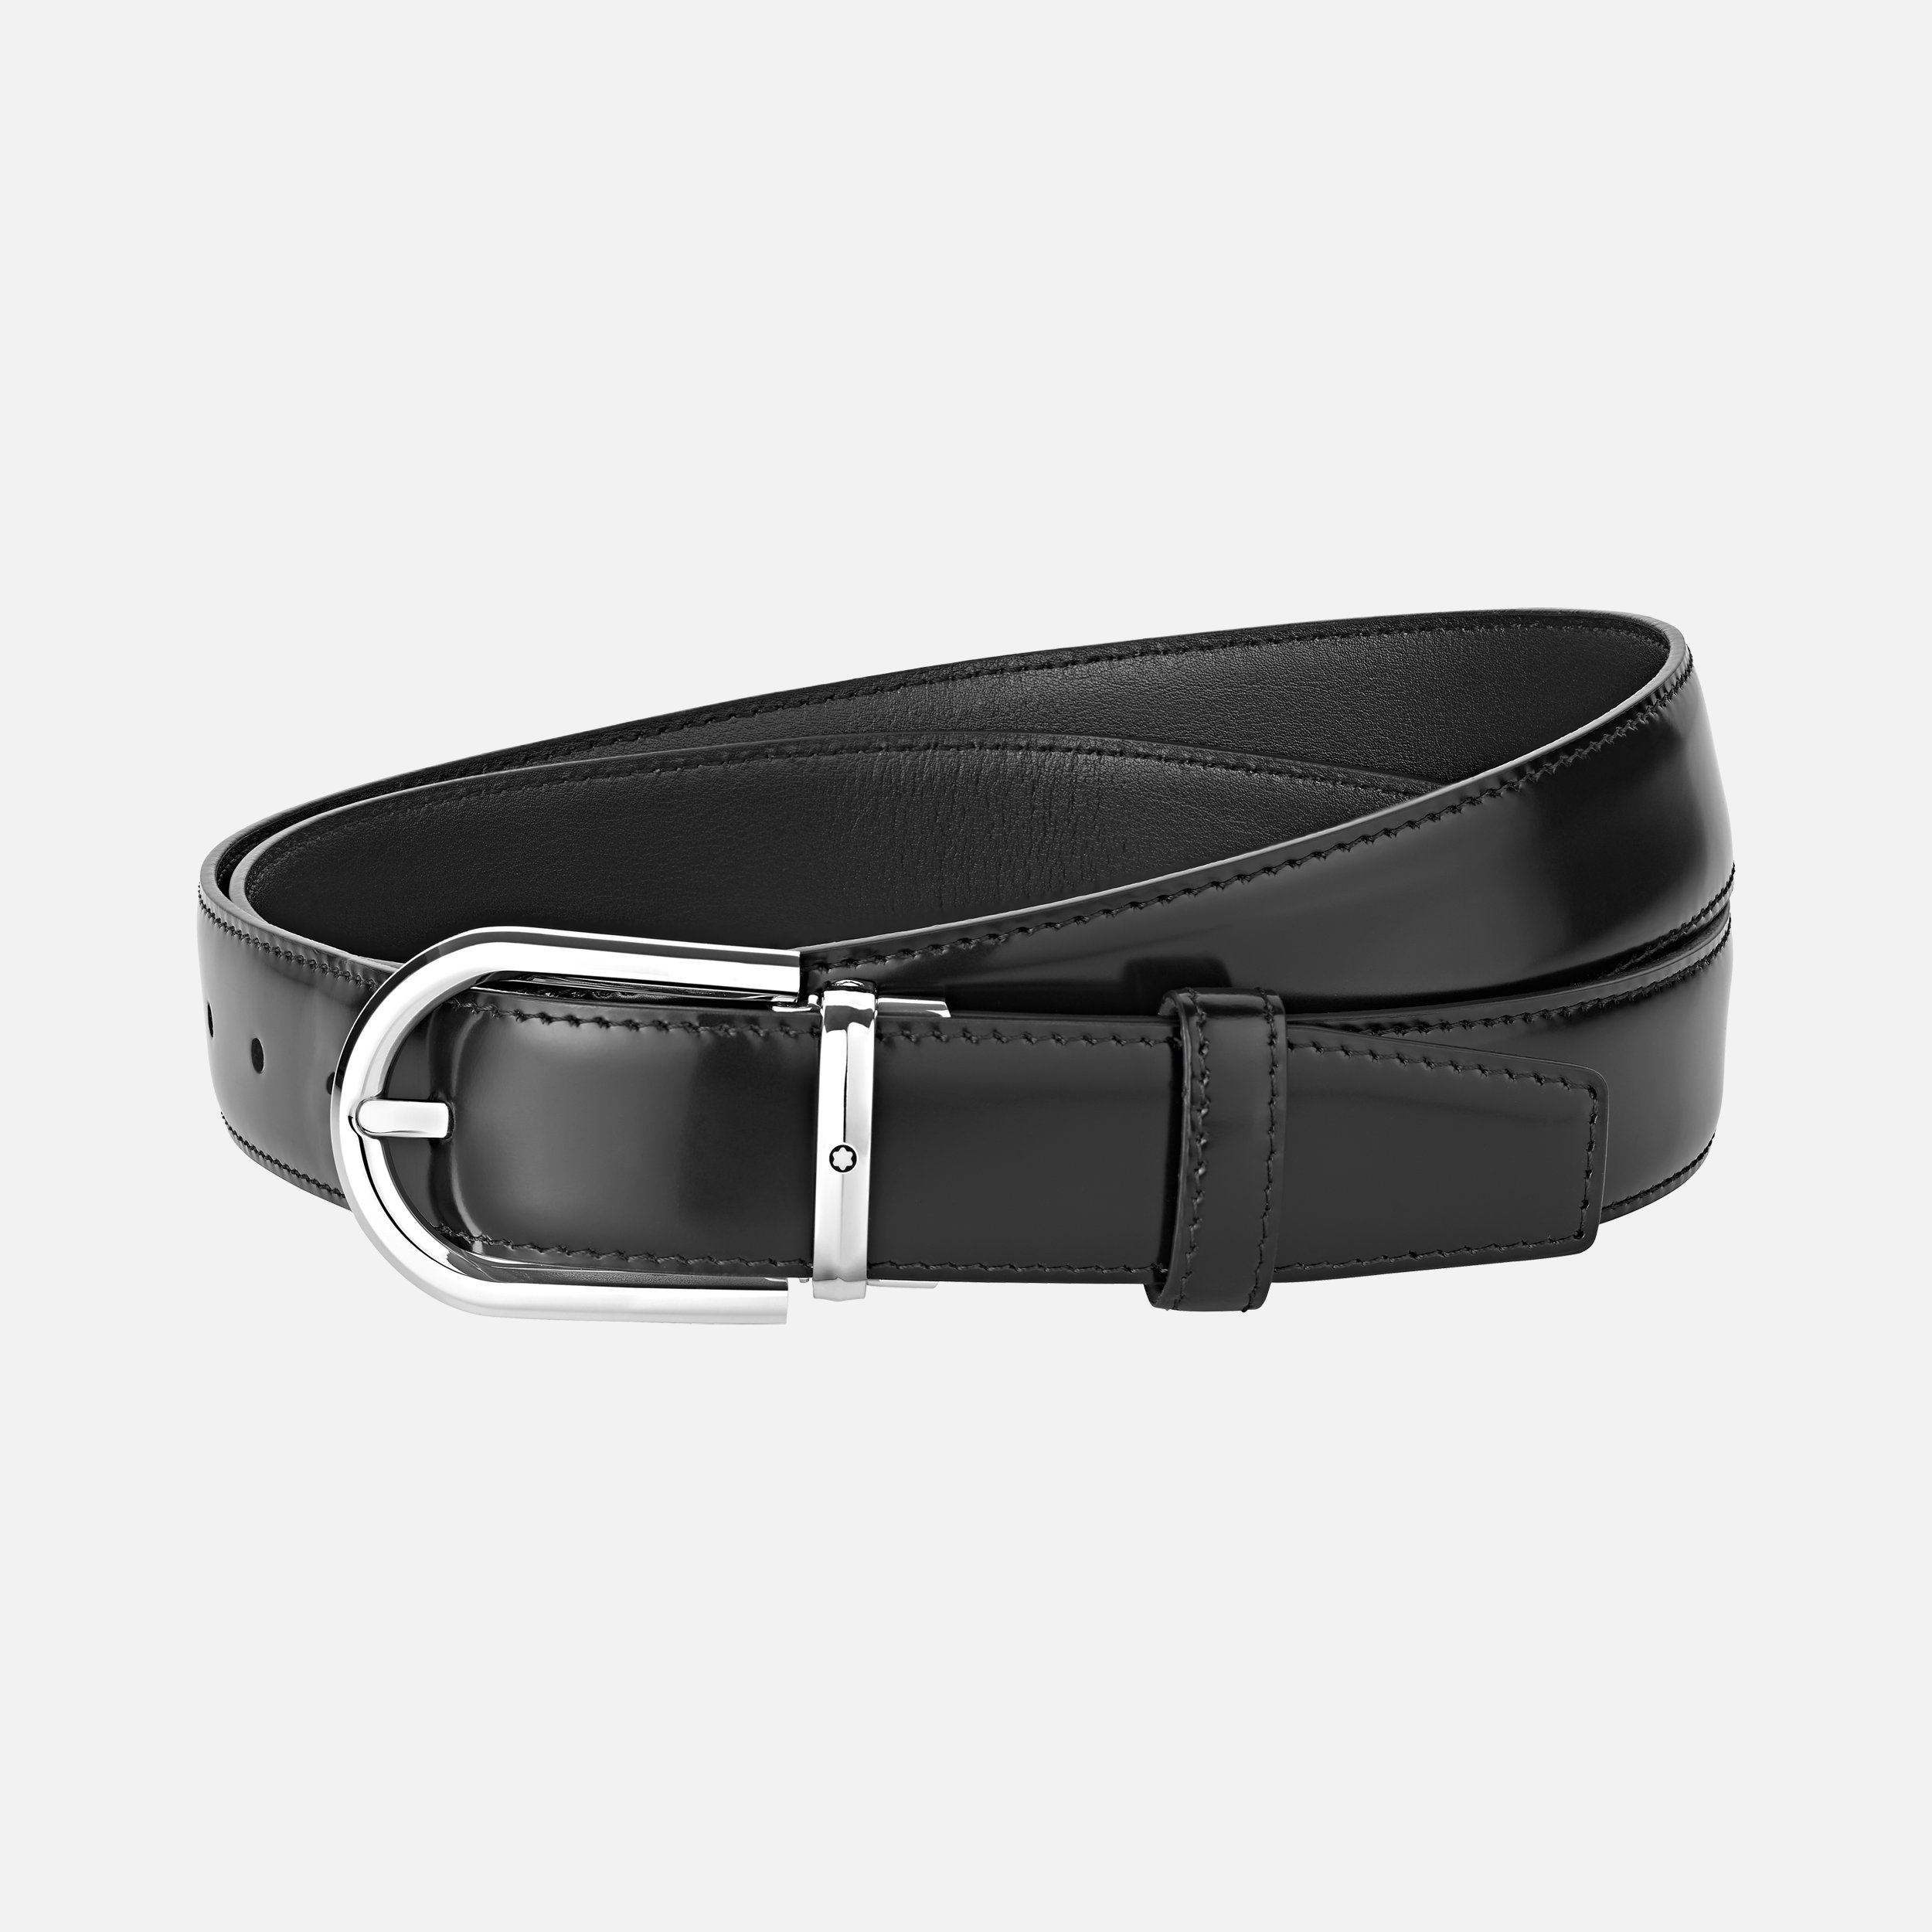 Horseshoe buckle black 30 mm leather belt - 1